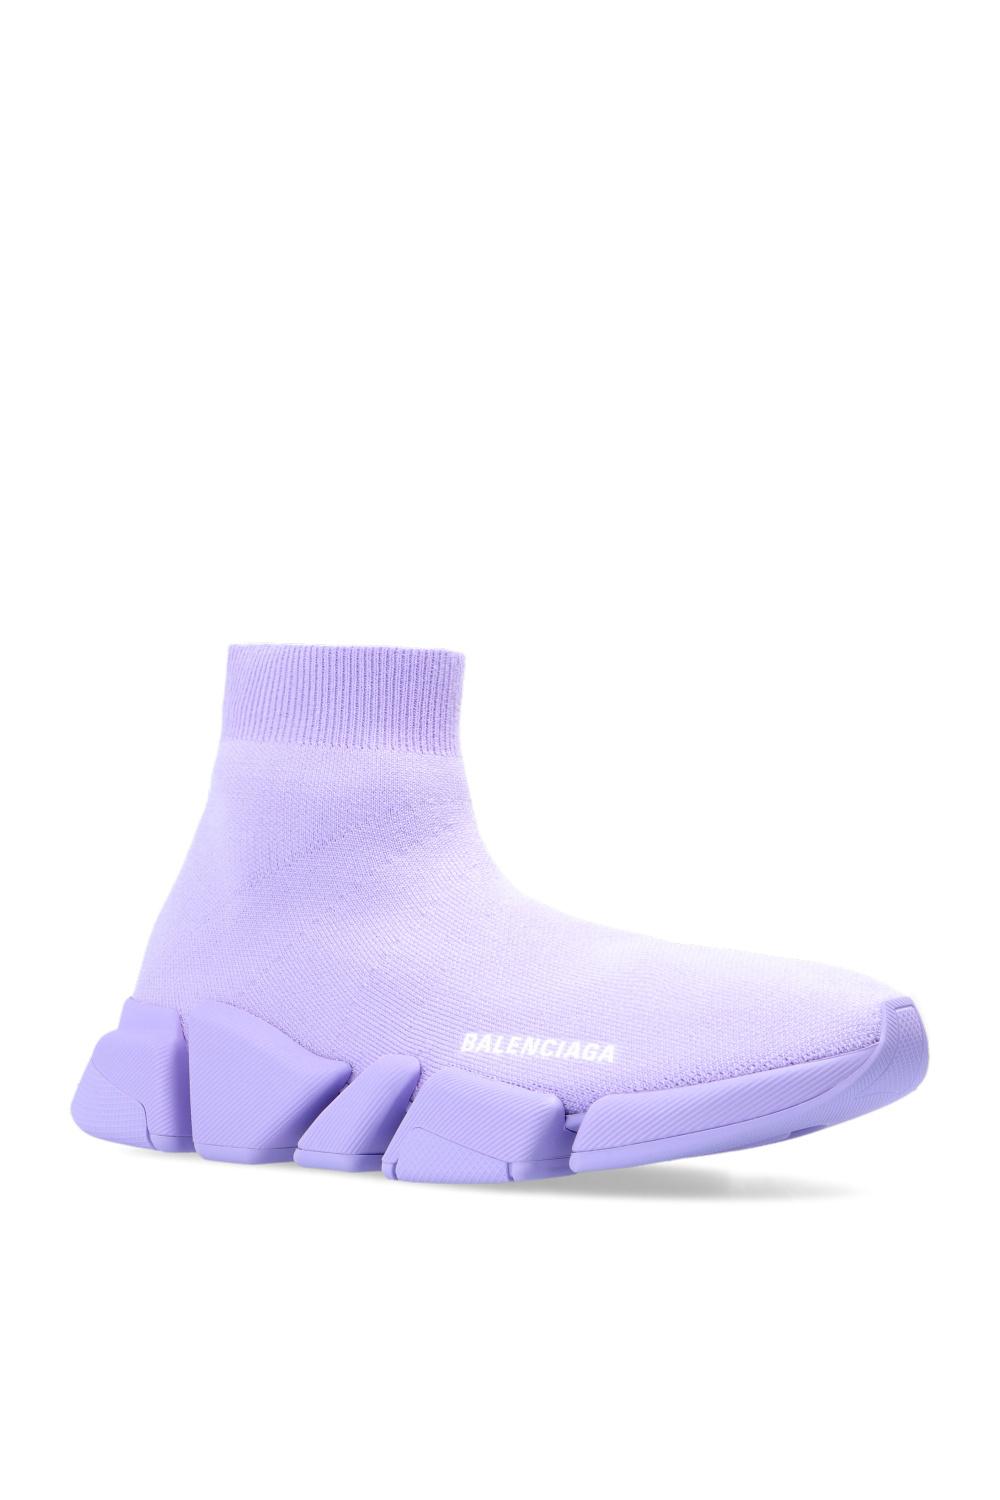 Balenciaga 'speed 2.0 Lt' Sock Sneakers in Purple | Lyst